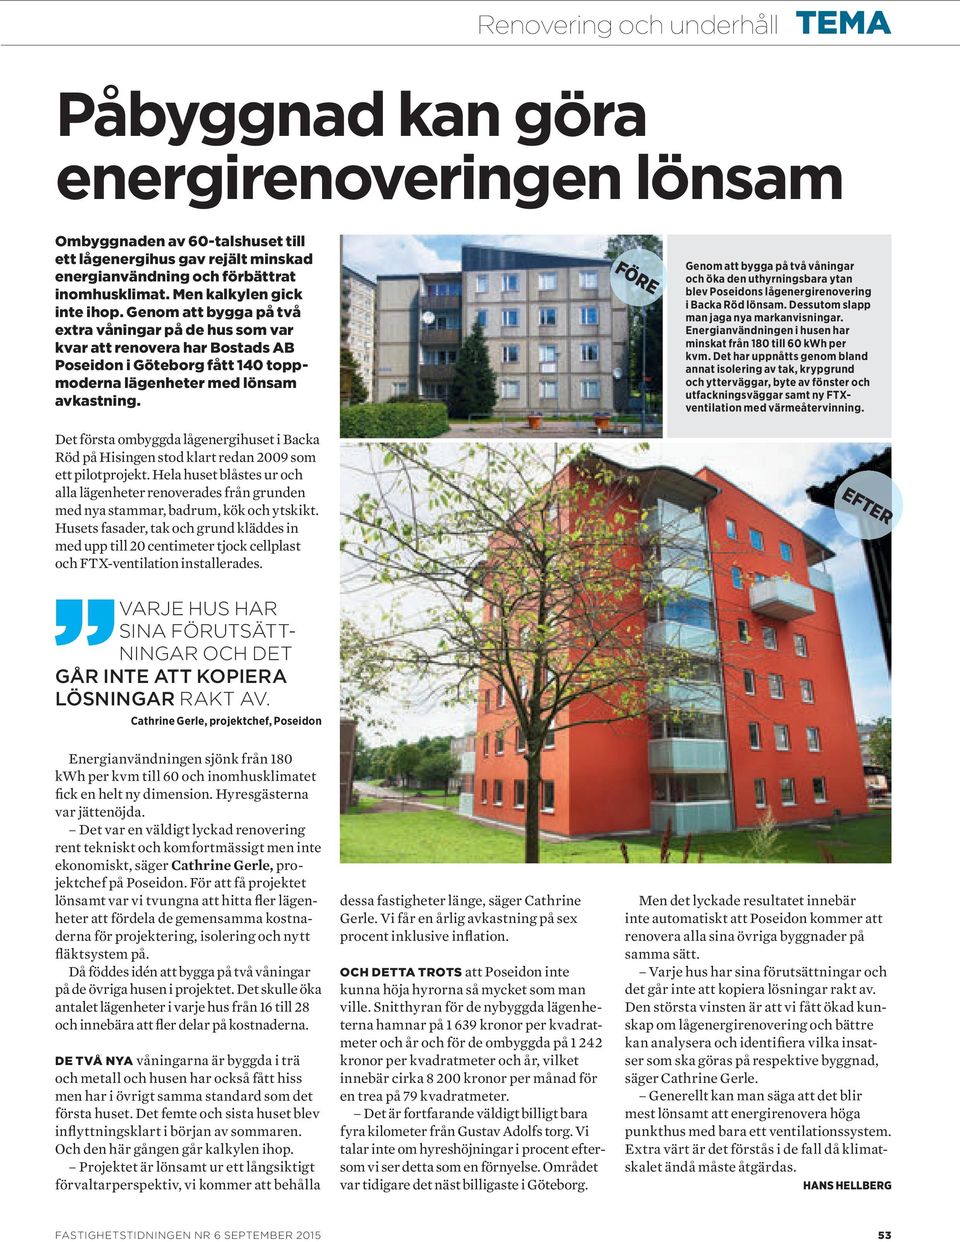 Det första ombyggda lågenergihuset i Backa Röd på Hisingen stod klart redan 2009 som ett pilotprojekt.